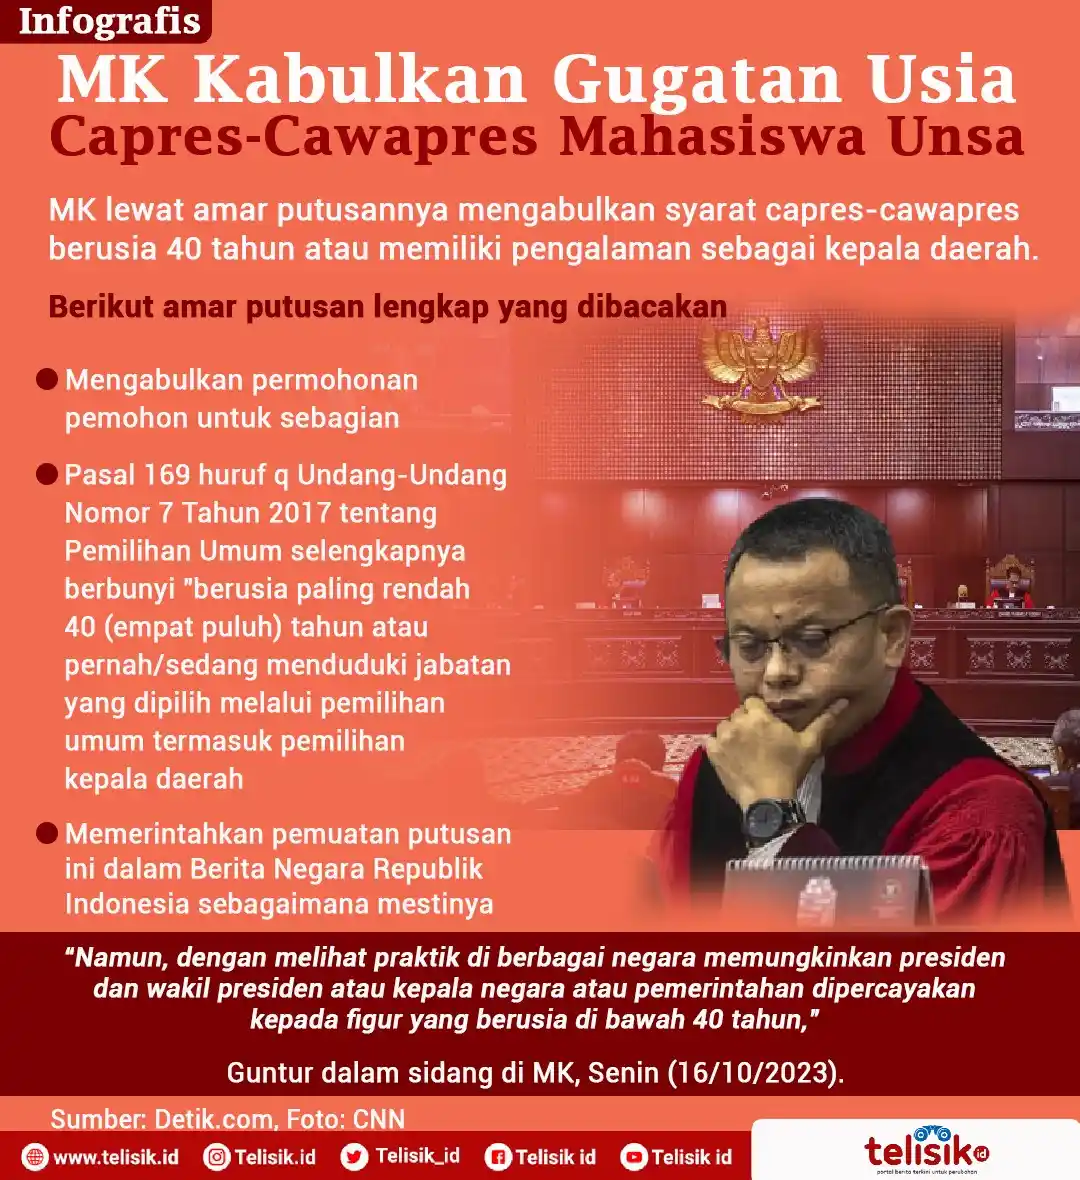 Infografis: MK Kabulkan Gugatan Usia Capres-Cawapres Mahasiswa Unsa